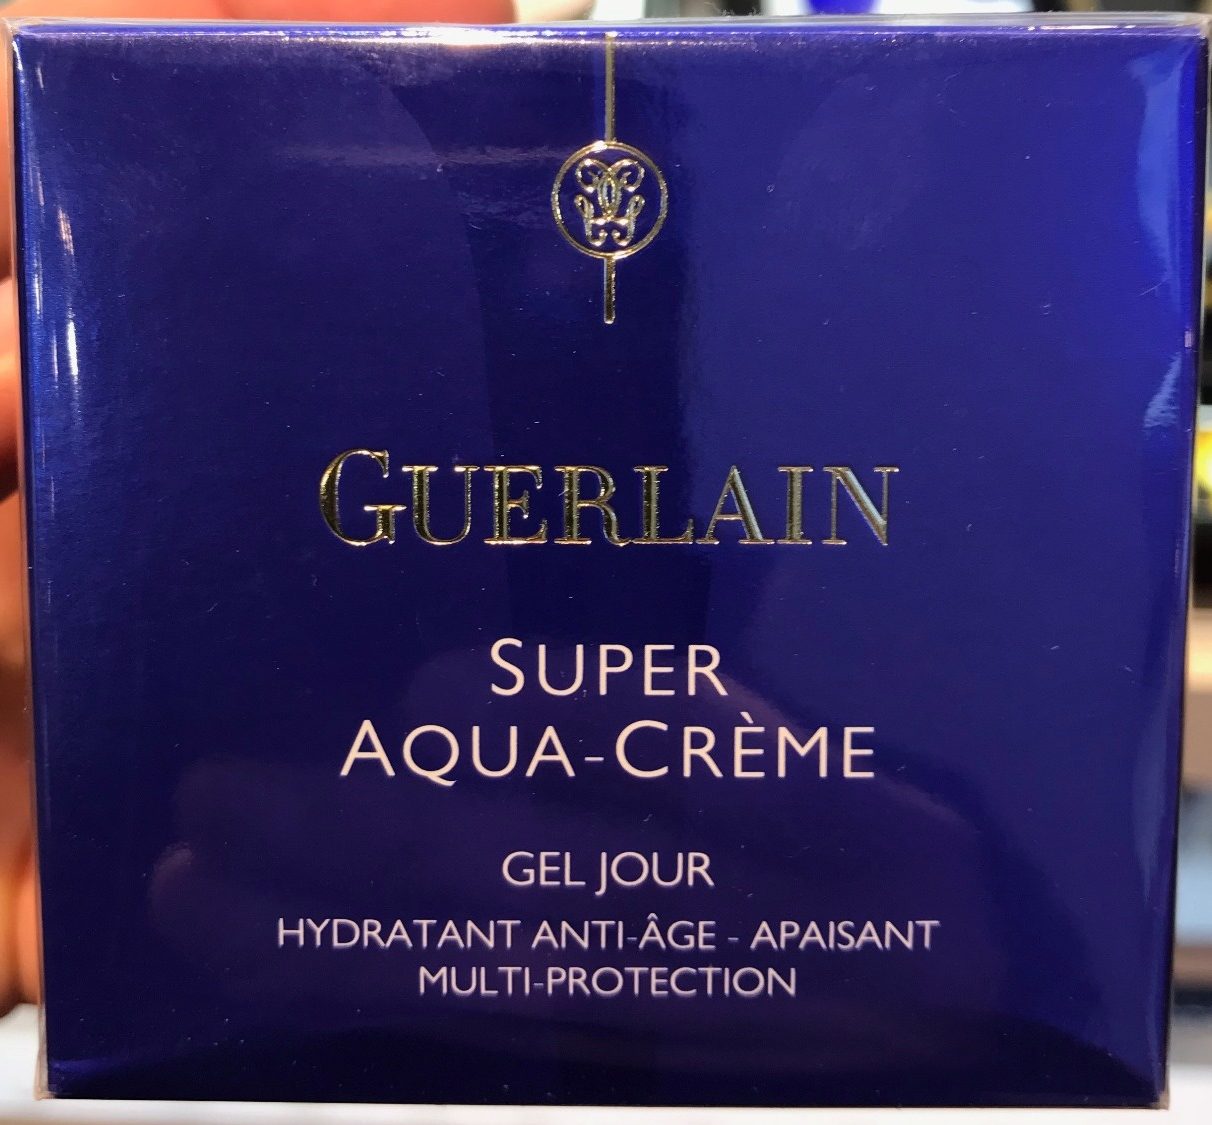 Super Aqua-Crème - Gel Jour - Product - fr